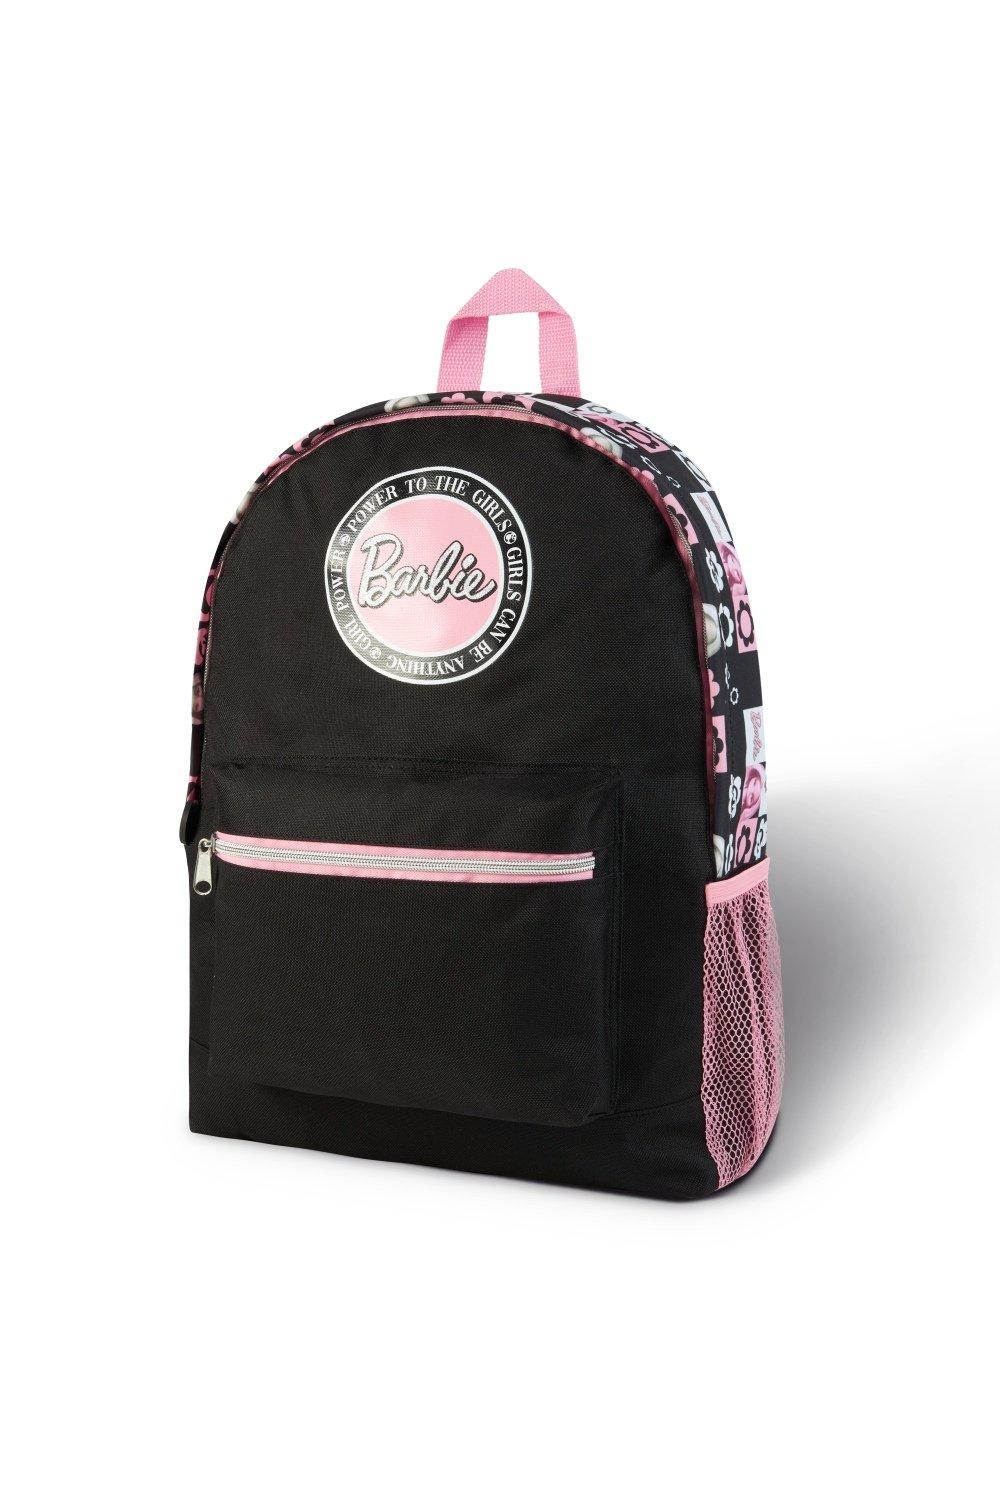 Школьная сумка Barbie, мультиколор женский холщовый школьный рюкзак с розовым принтом женский школьный рюкзак школьные сумки для девочек подростков 2018